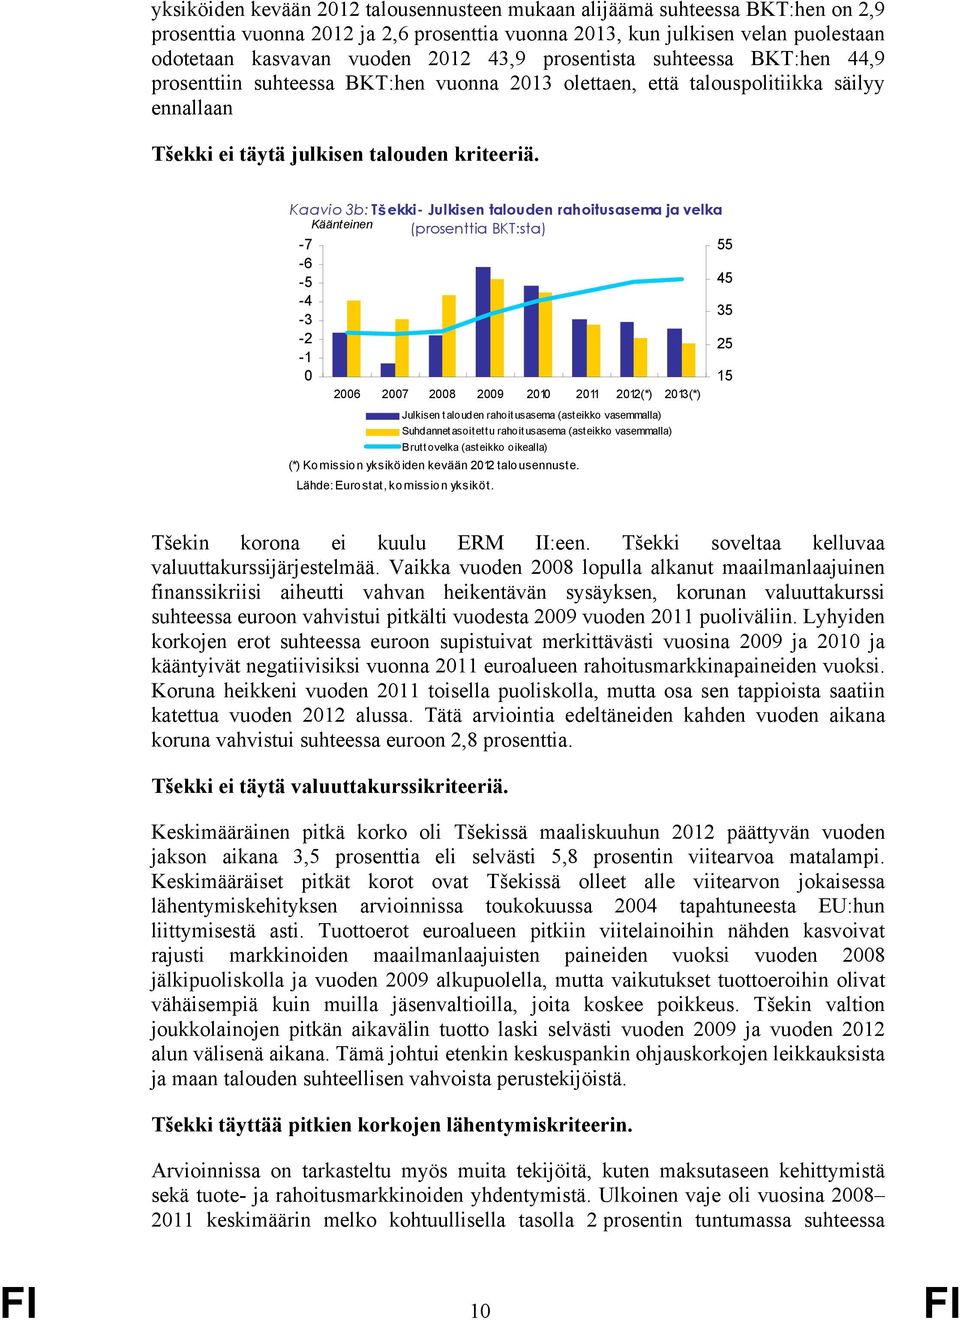 Kaavio 3b: Tšekki- Julkisen talouden rahoitusasema ja velka Käänteinen (prosenttia BKT:sta) -7 55-6 -5-4 -3-2 -1 45 35 25 15 26 27 28 29 21 211 212(*) 213(*) Julkisen talouden rahoitusasema (asteikko